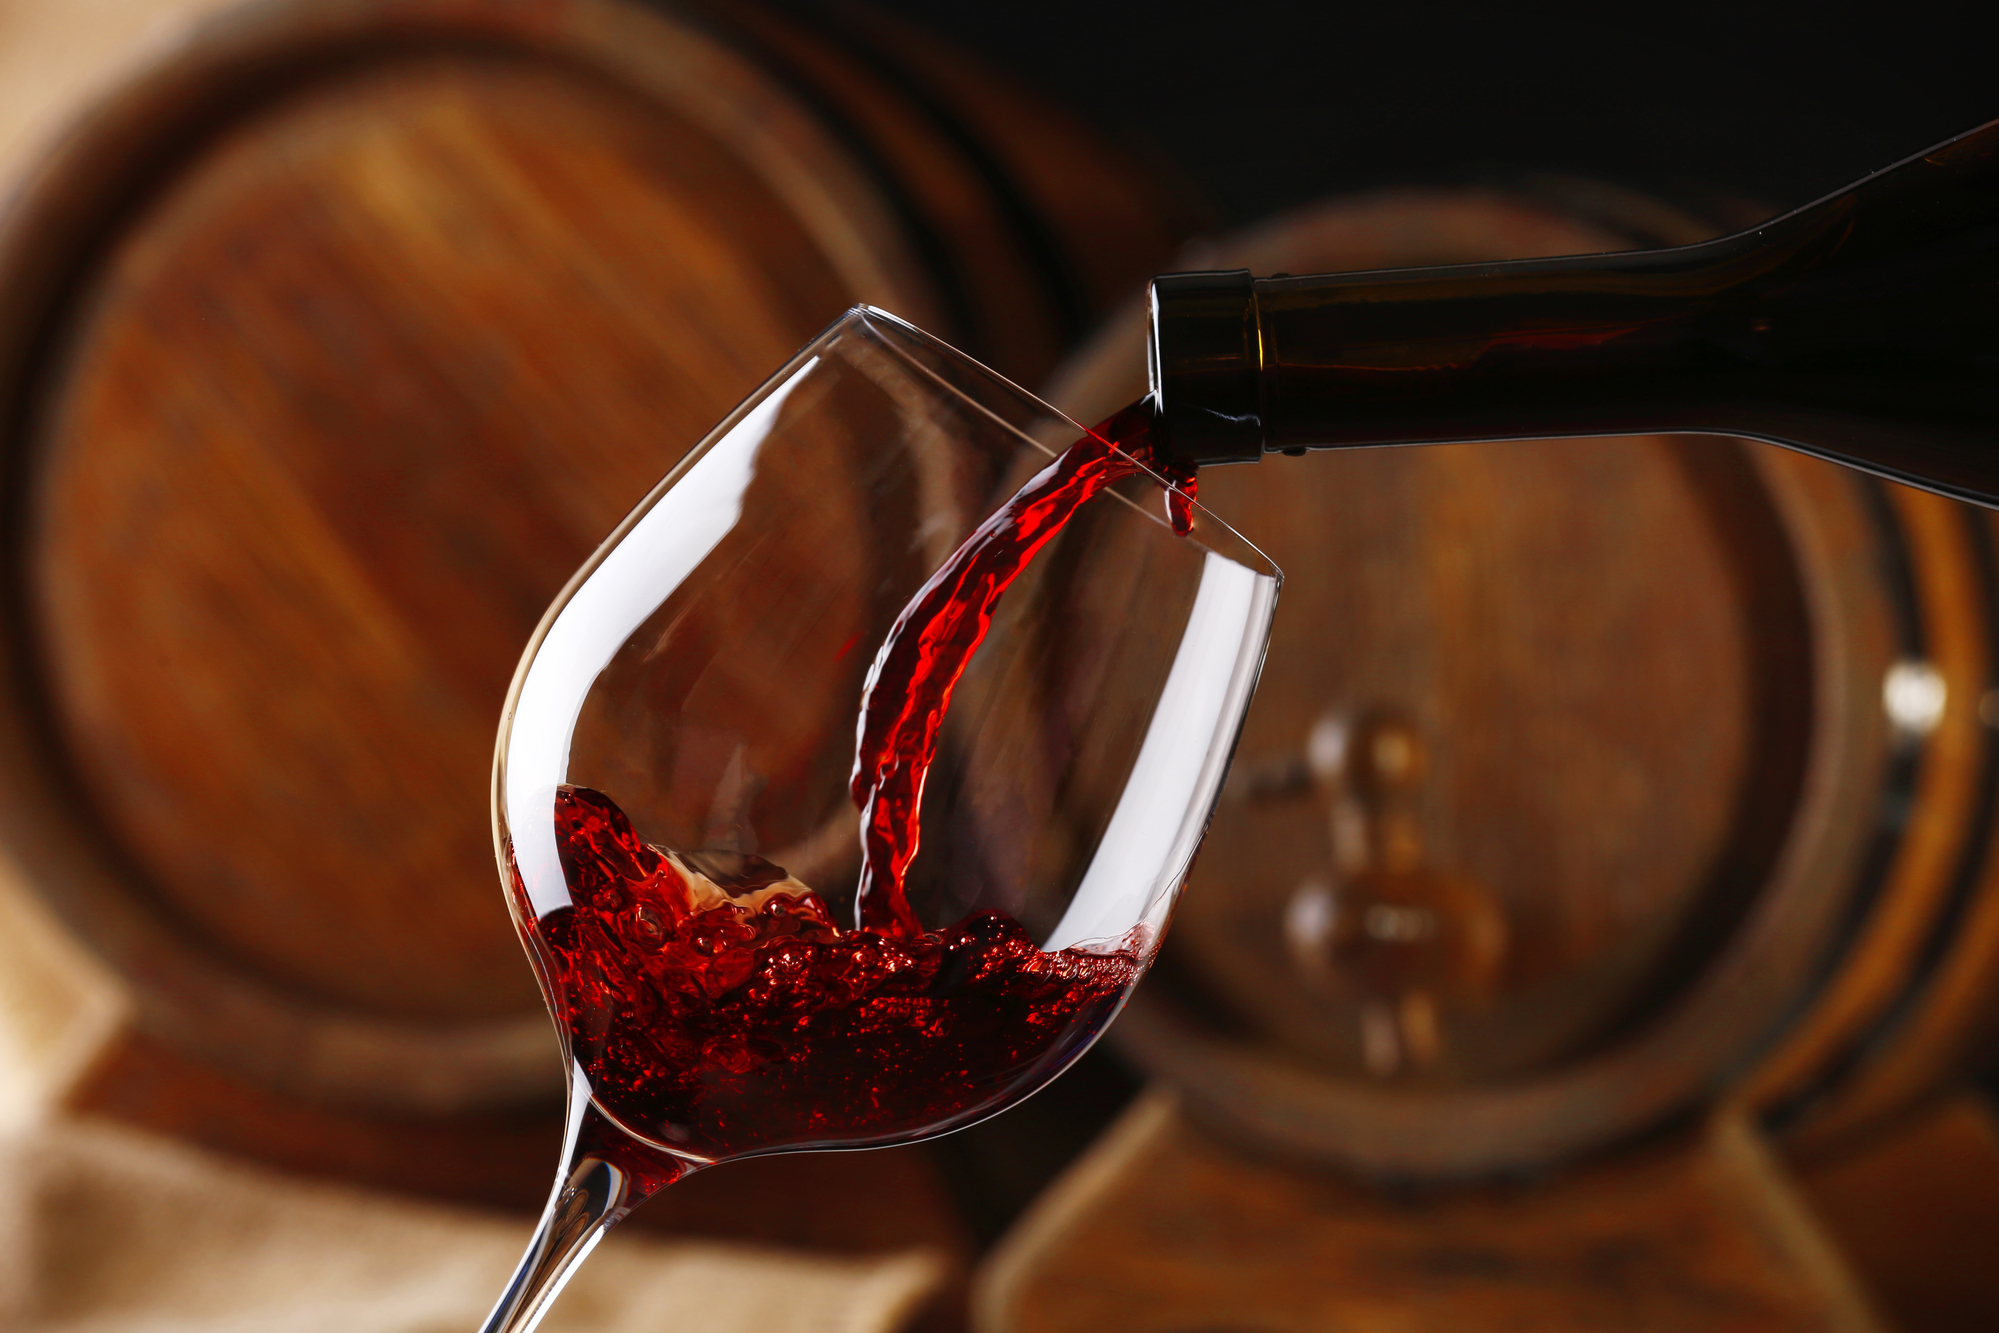 Nagy István: A magyar borászok kiváló minőségű borokat készítenek